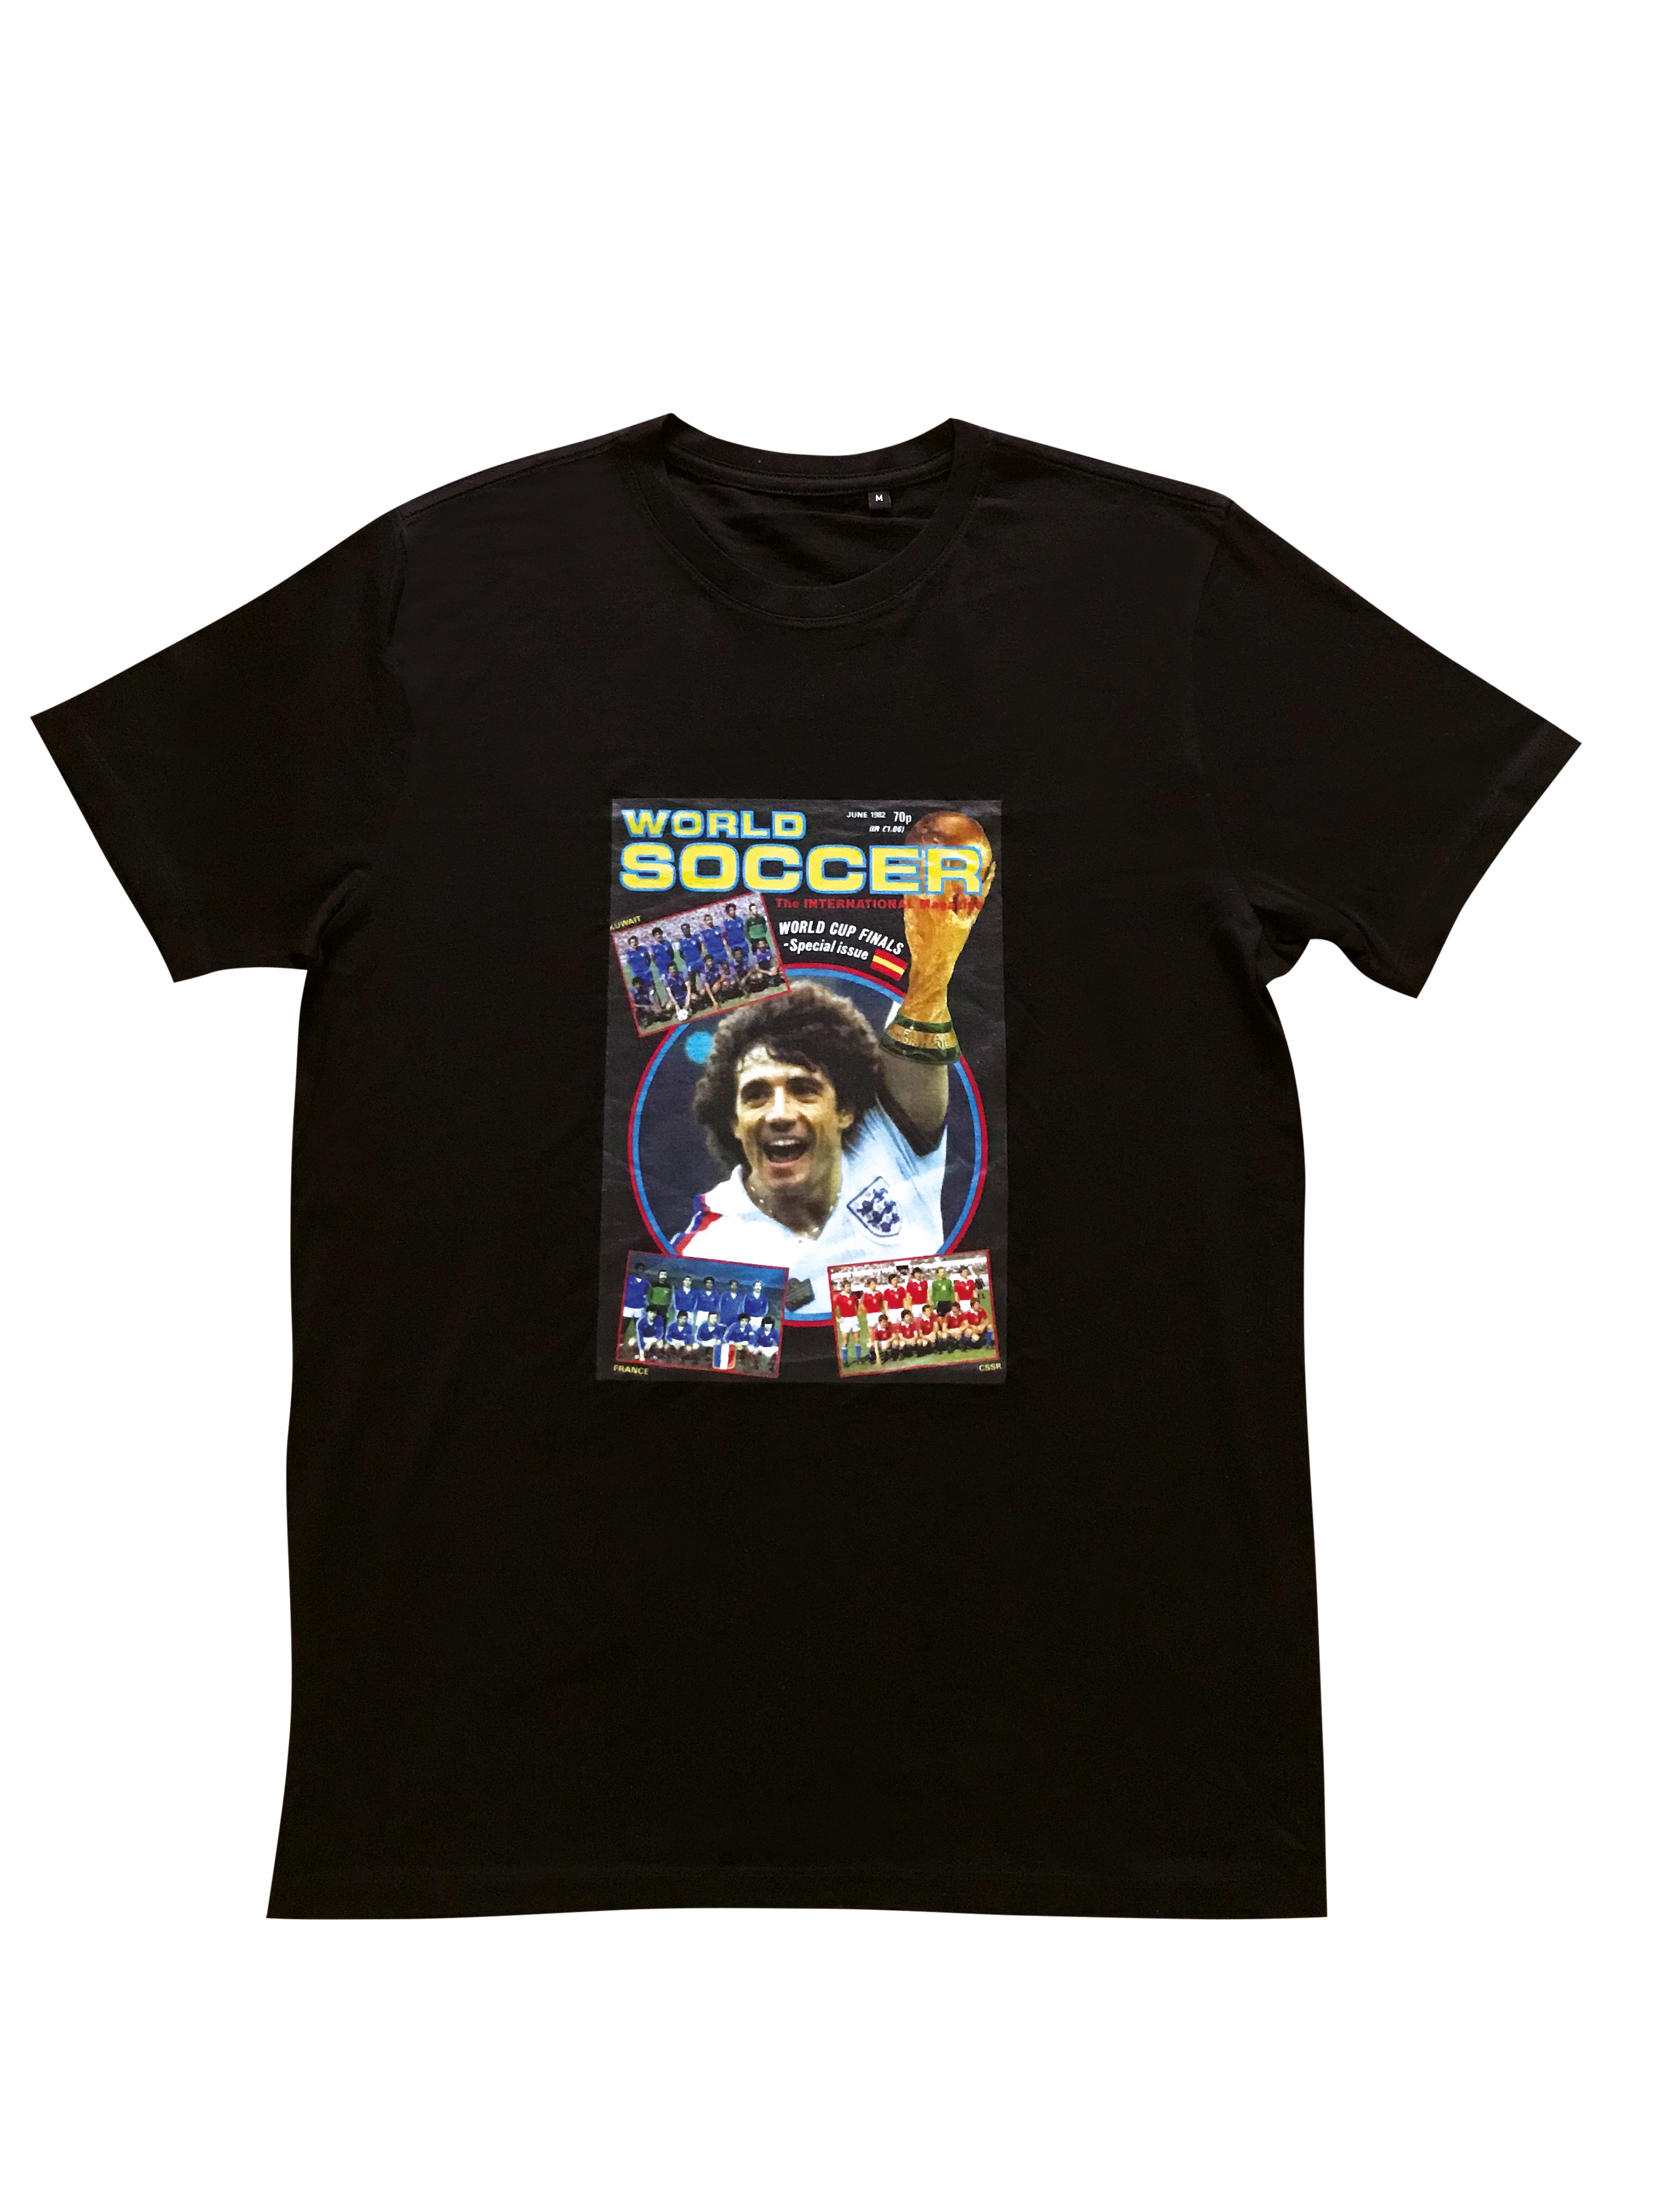 World Soccer Magazine T-Shirt - Spain '82